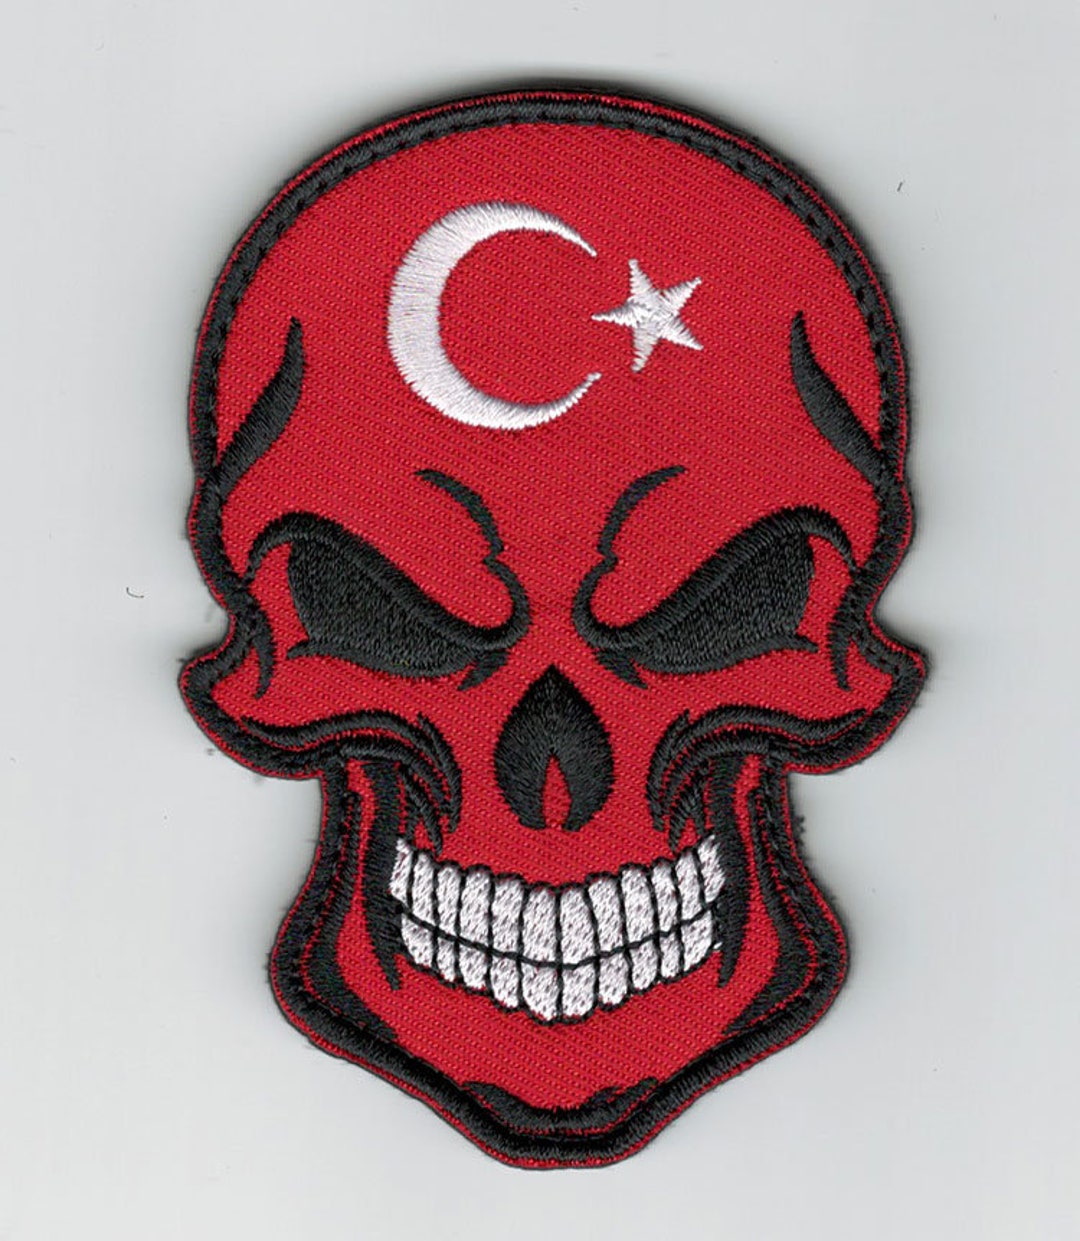 Parche de Velcro bordado con Bandera de País, Calavera Punisher, Rusia,  España, Turquía, parches militares tácticos